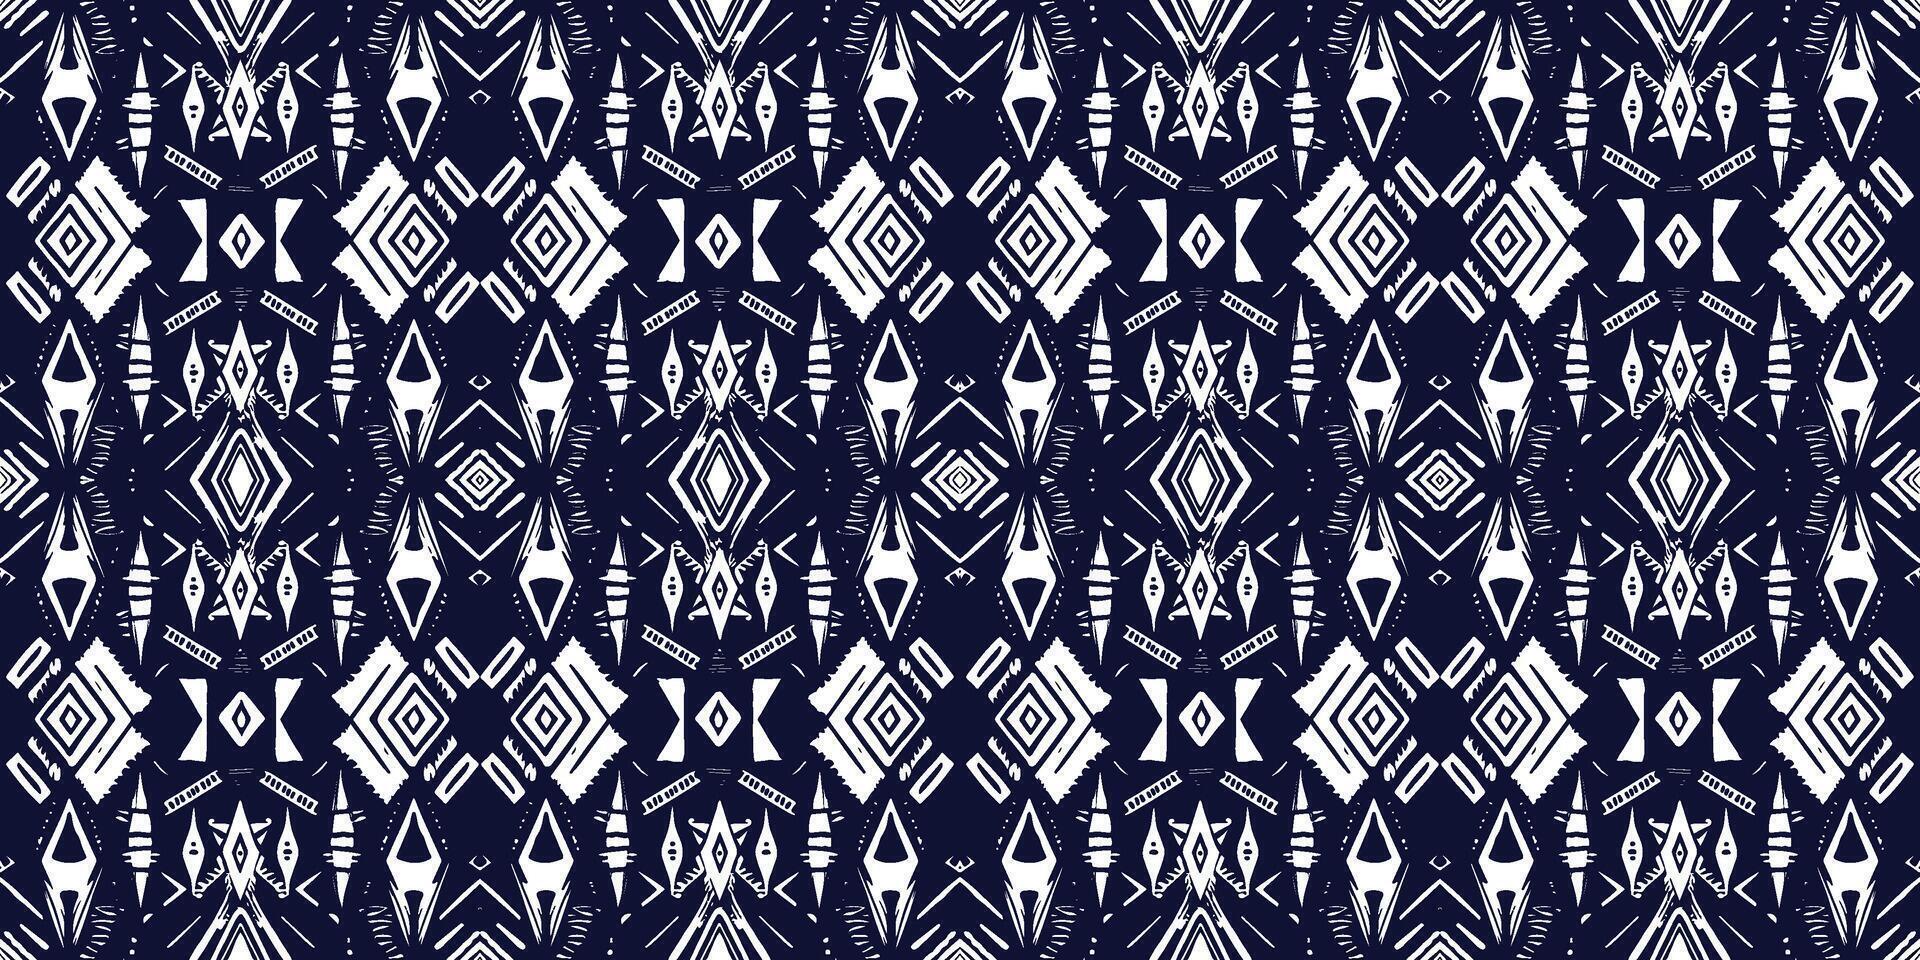 abstract naadloos patroon, naadloos behang, naadloos achtergrond ontworpen voor gebruik voor interieur, behang, kleding stof, gordijn, tapijt, kleding, batik, satijn, achtergrond, illustratie vector